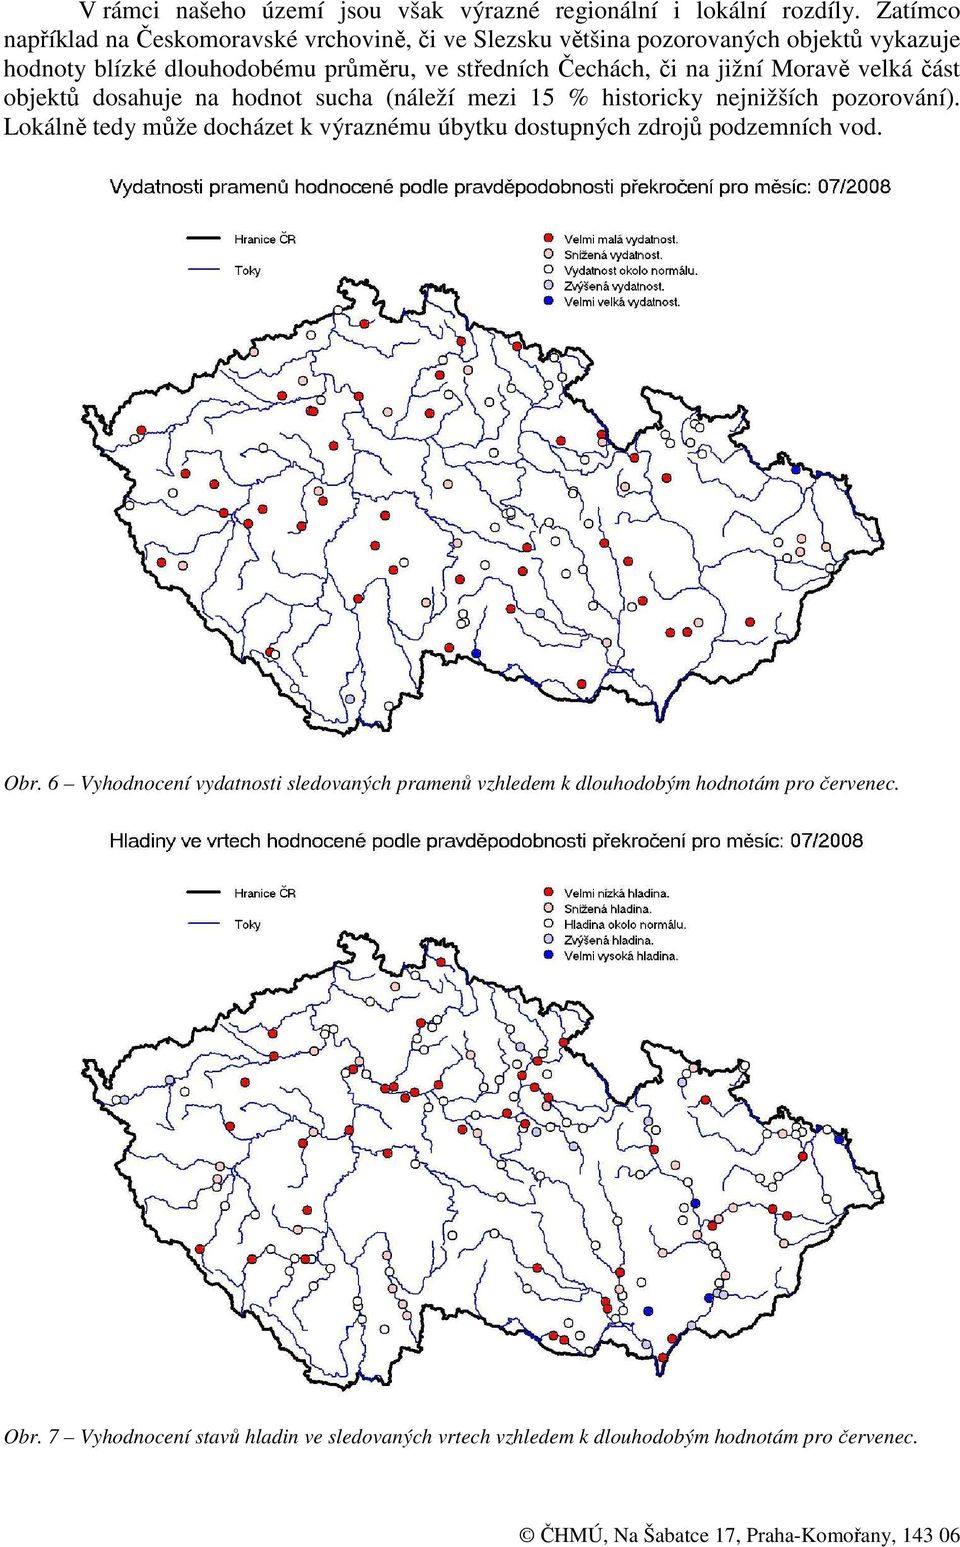 Čechách, či na jižní Moravě velká část objektů dosahuje na hodnot sucha (náleží mezi 15 % historicky nejnižších pozorování).